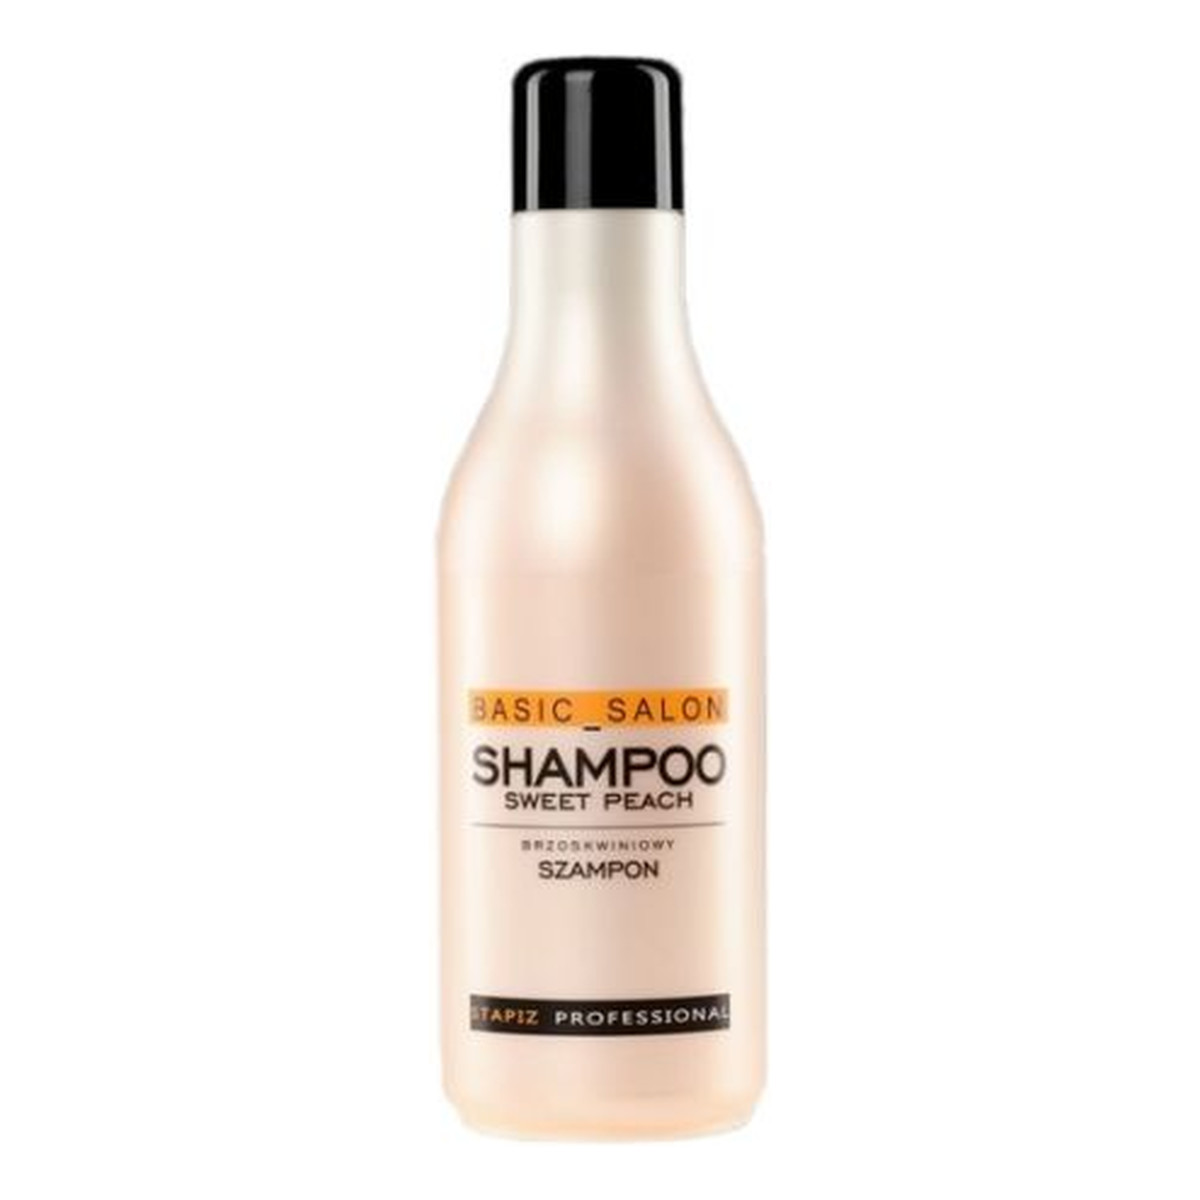 Stapiz Professional Sweet Peach Shampoo Szampon brzoskwiniowy do włosów 1000ml